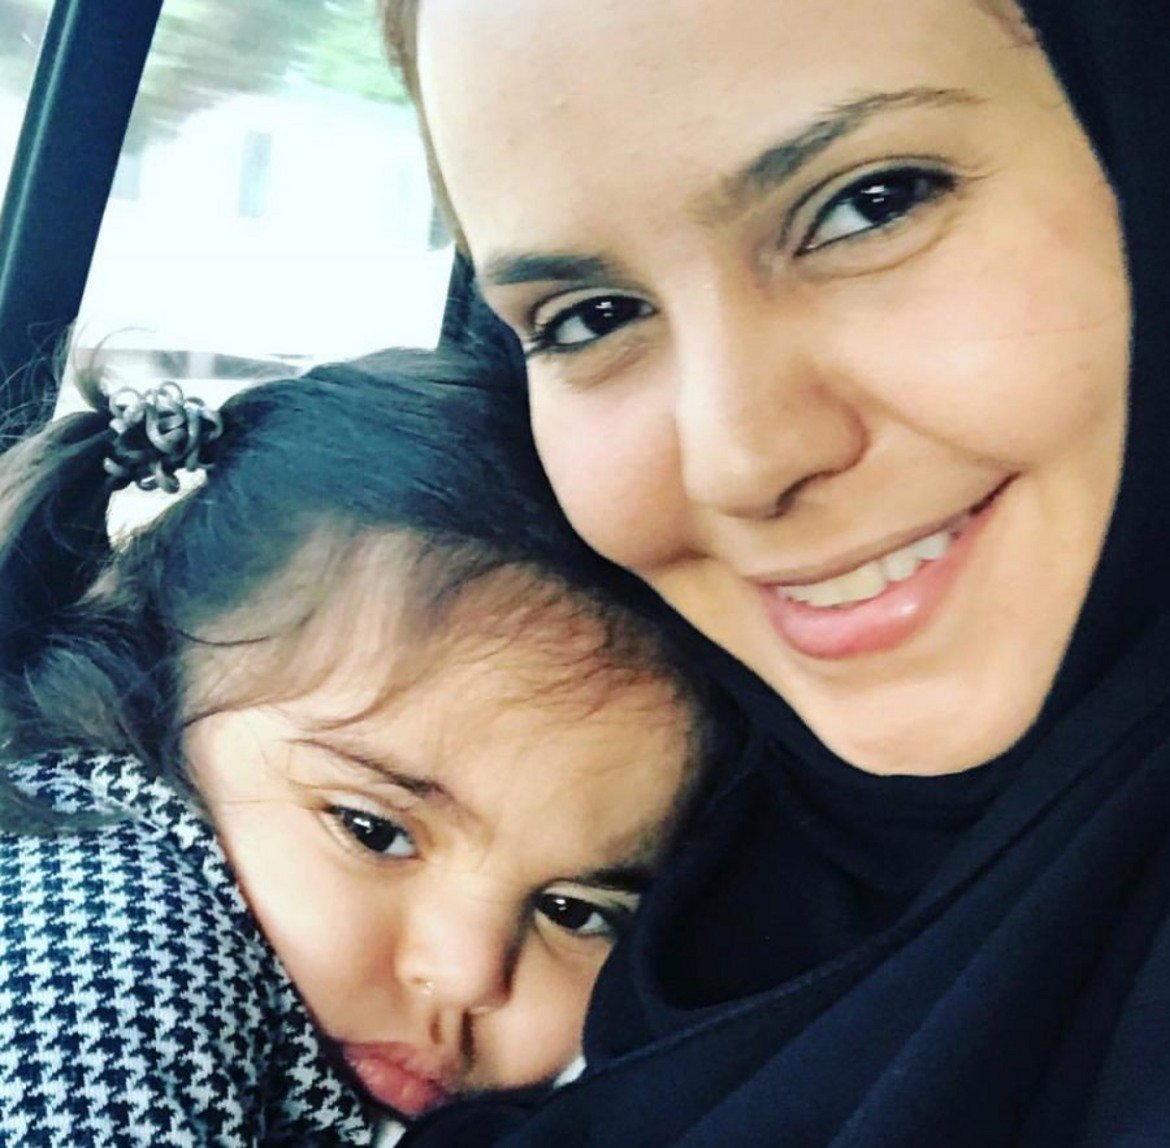 Еман ал Нафджан 
 
Тя е една от най-популярните личности в онлайн-пространството в Саудитска Арабия, като много от публикациите й са свързани с протести срещу забраната жени да шофират в родната й страна. Блогът й е един от първите сайтове, който чуждестранните журналисти посещават при подготовката на пътуване в Рияд. През май Ал Нафджан беше арестувана заедно с още няколко правозащитнички. Държавните медии я наричат "предателка", а обвинението срещу нея може да й донесе до 20 години затвор. Случаят с Еман е доказателство, че колкото и да се реформира саудитското кралство, все още продължава да заглушава критичните гласове.